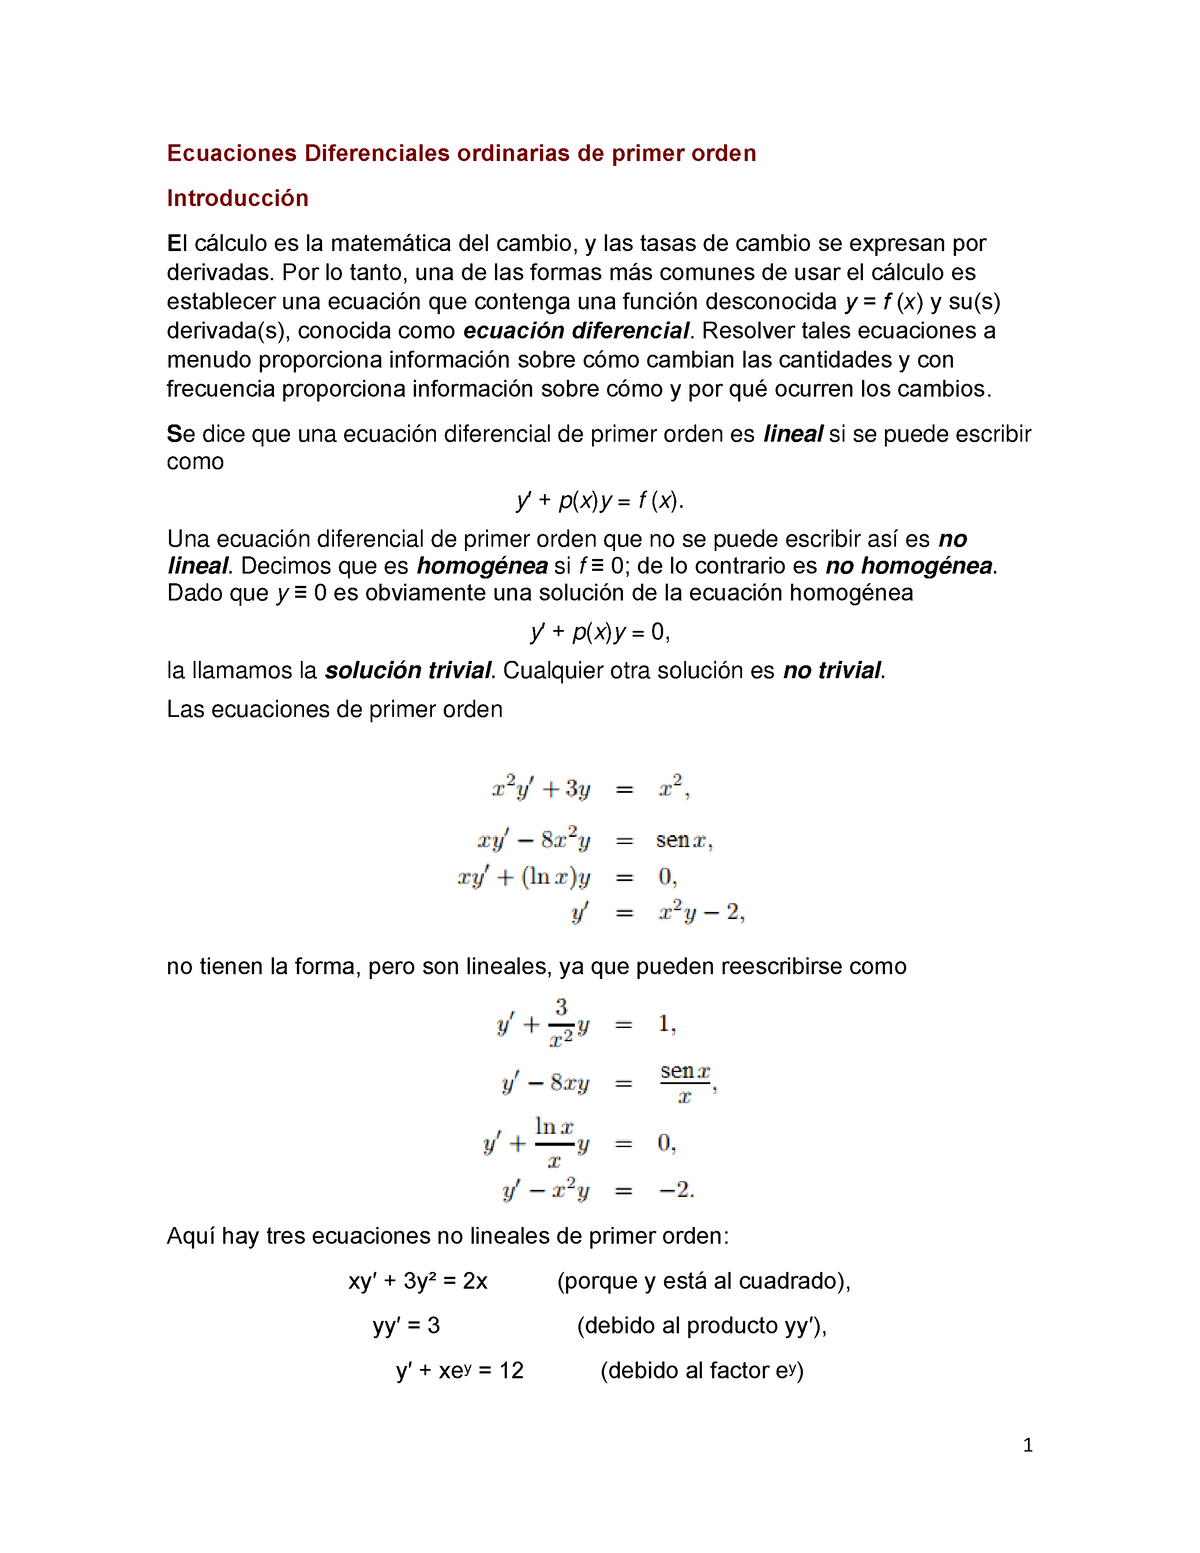 Ecuaciones Diferenciales Ordinarias De Primer Orden Ecuaciones Diferenciales Ordinarias De 4176